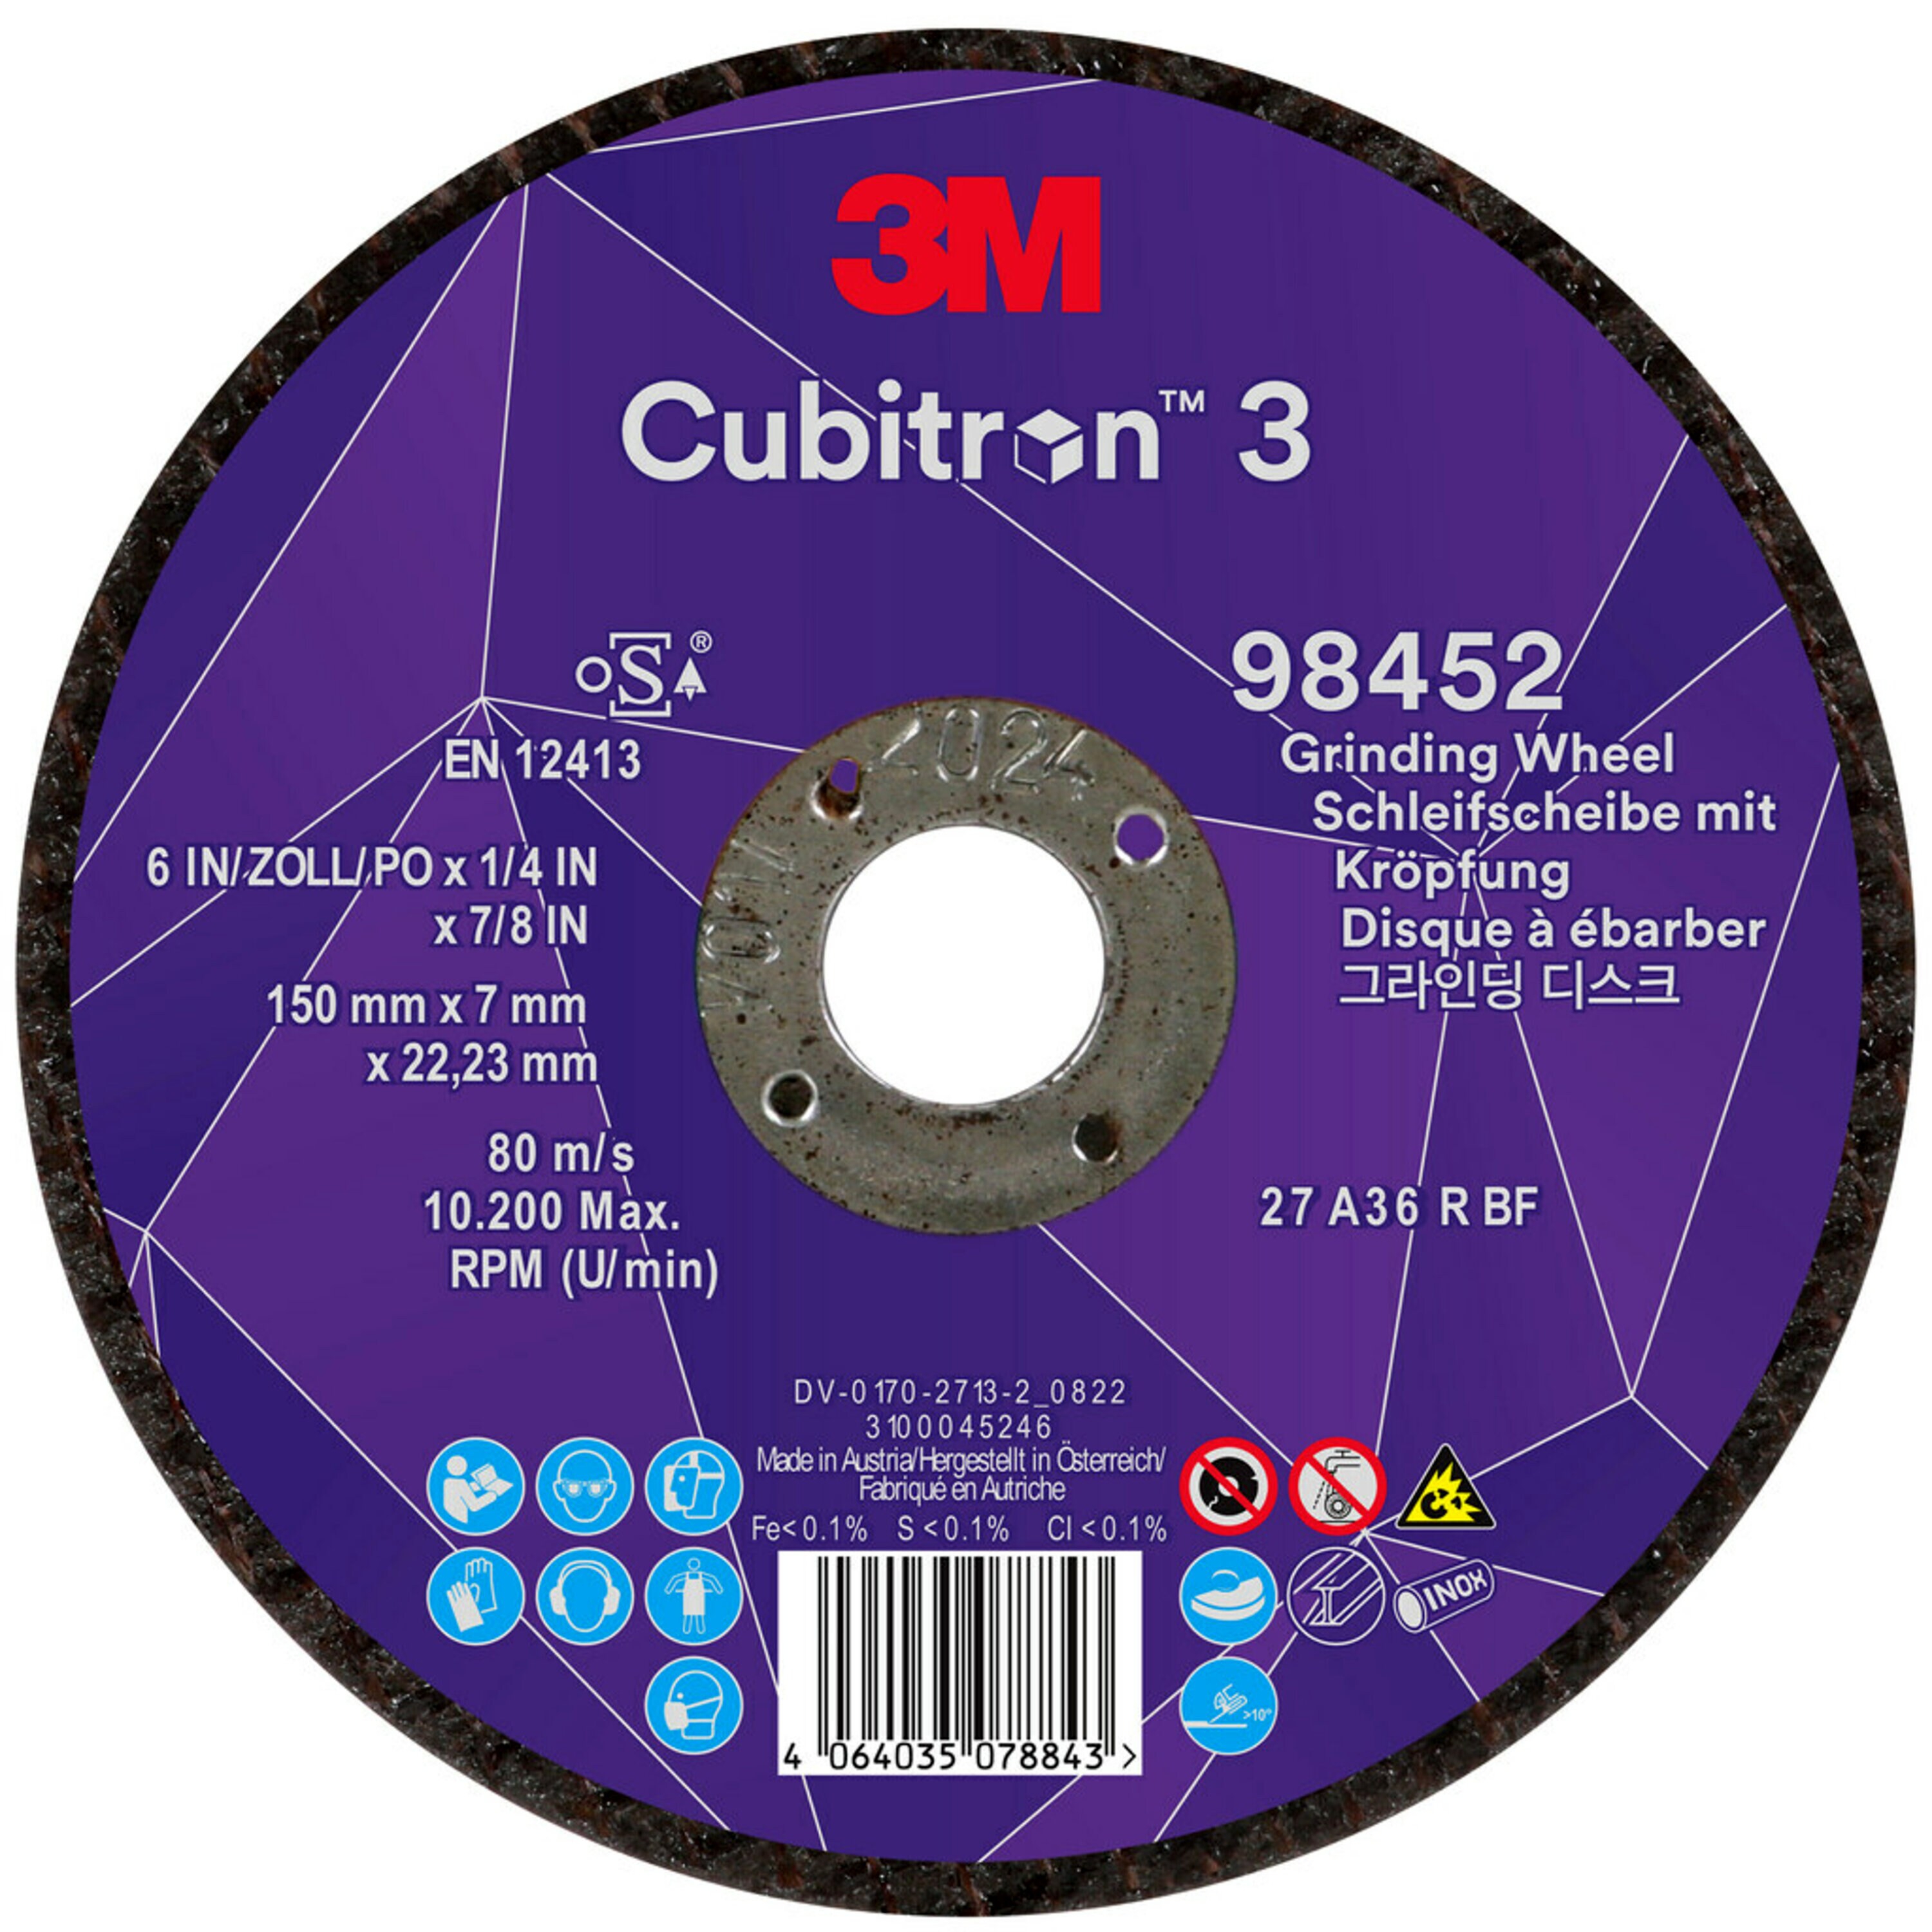 3M Cubitron 3 disque à ébarber, 150 mm, 7,0 mm, 22,23 mm, 36+, type 27 # 98452